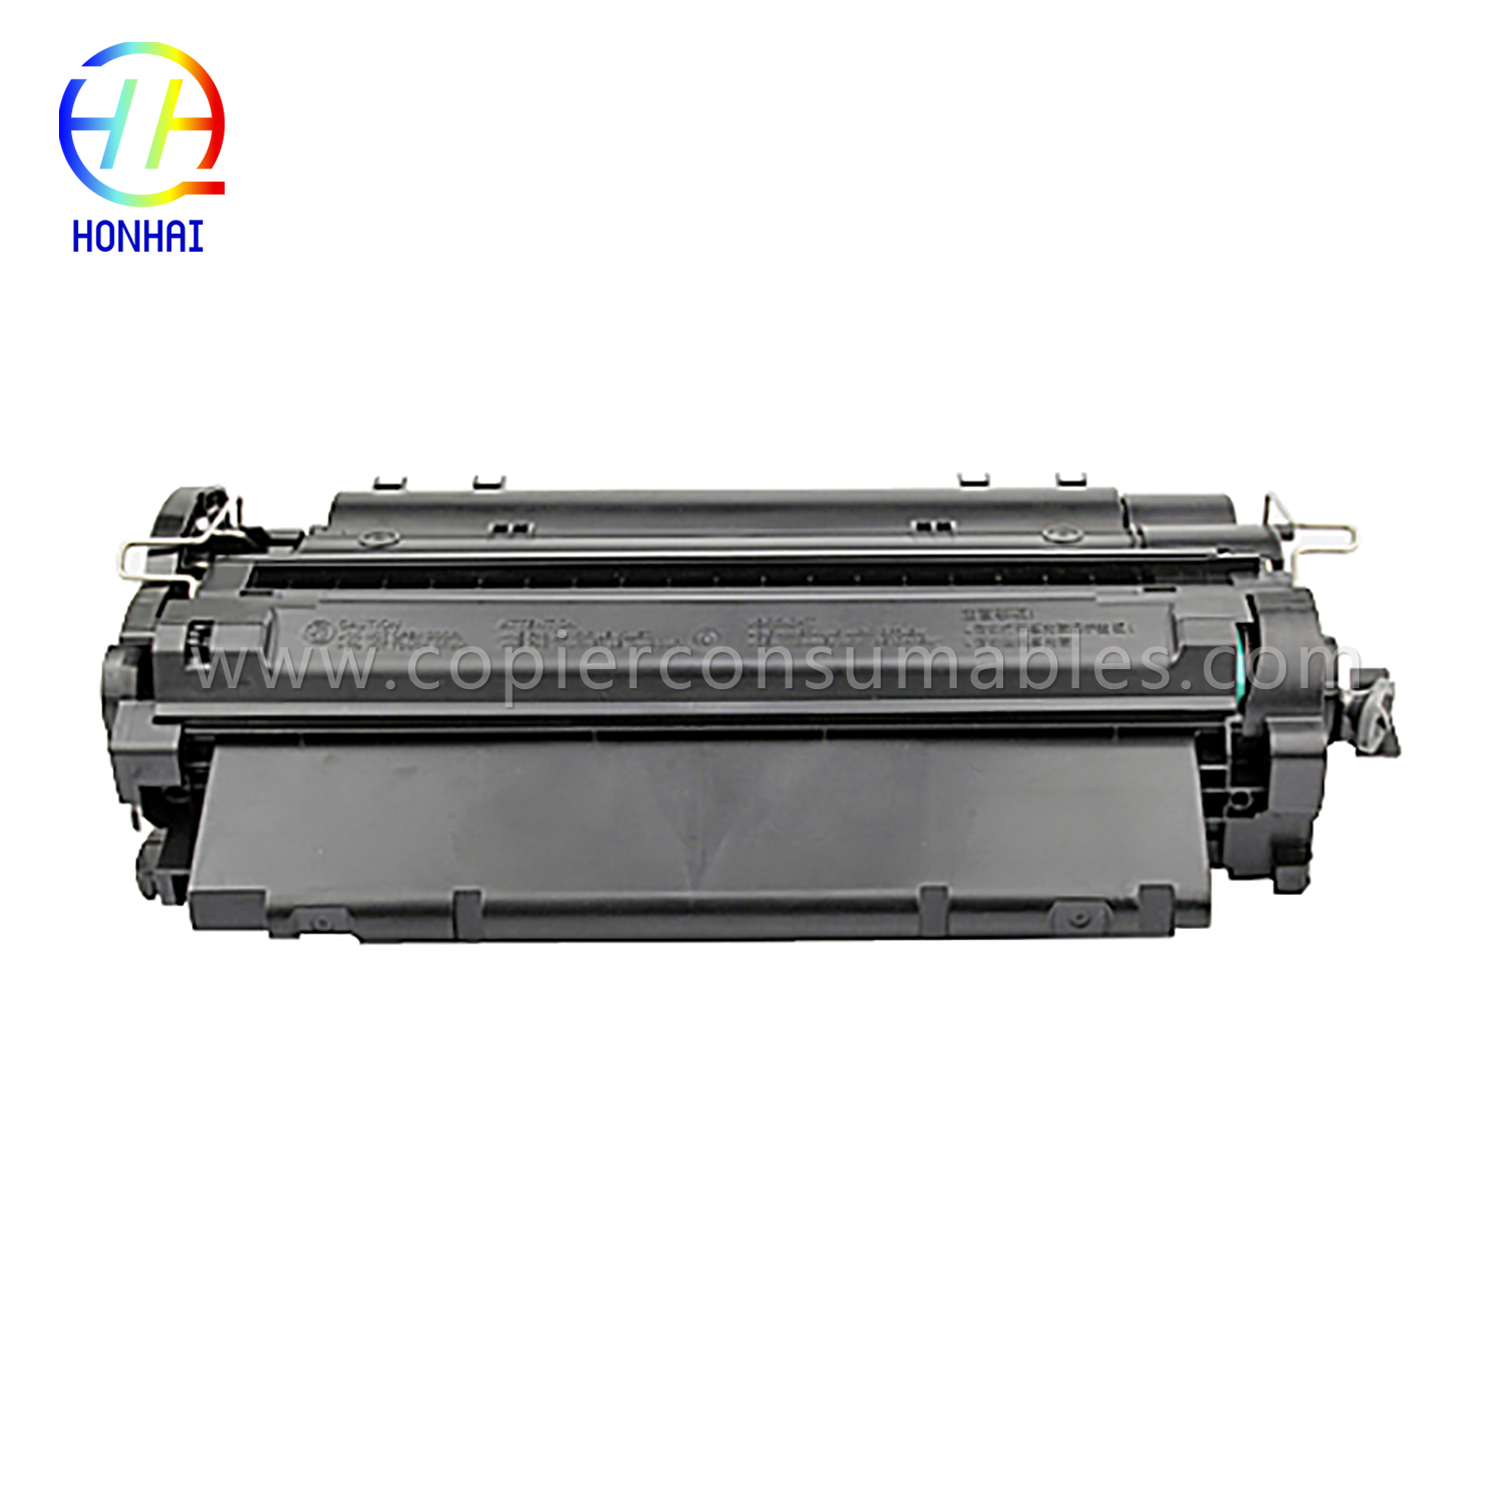 Skrataċ tat-toner tal-kulur HP LaserJet LaserJet Pro MFP M521dn Enterprise P3015 (CE255X) -1 (2) 拷贝